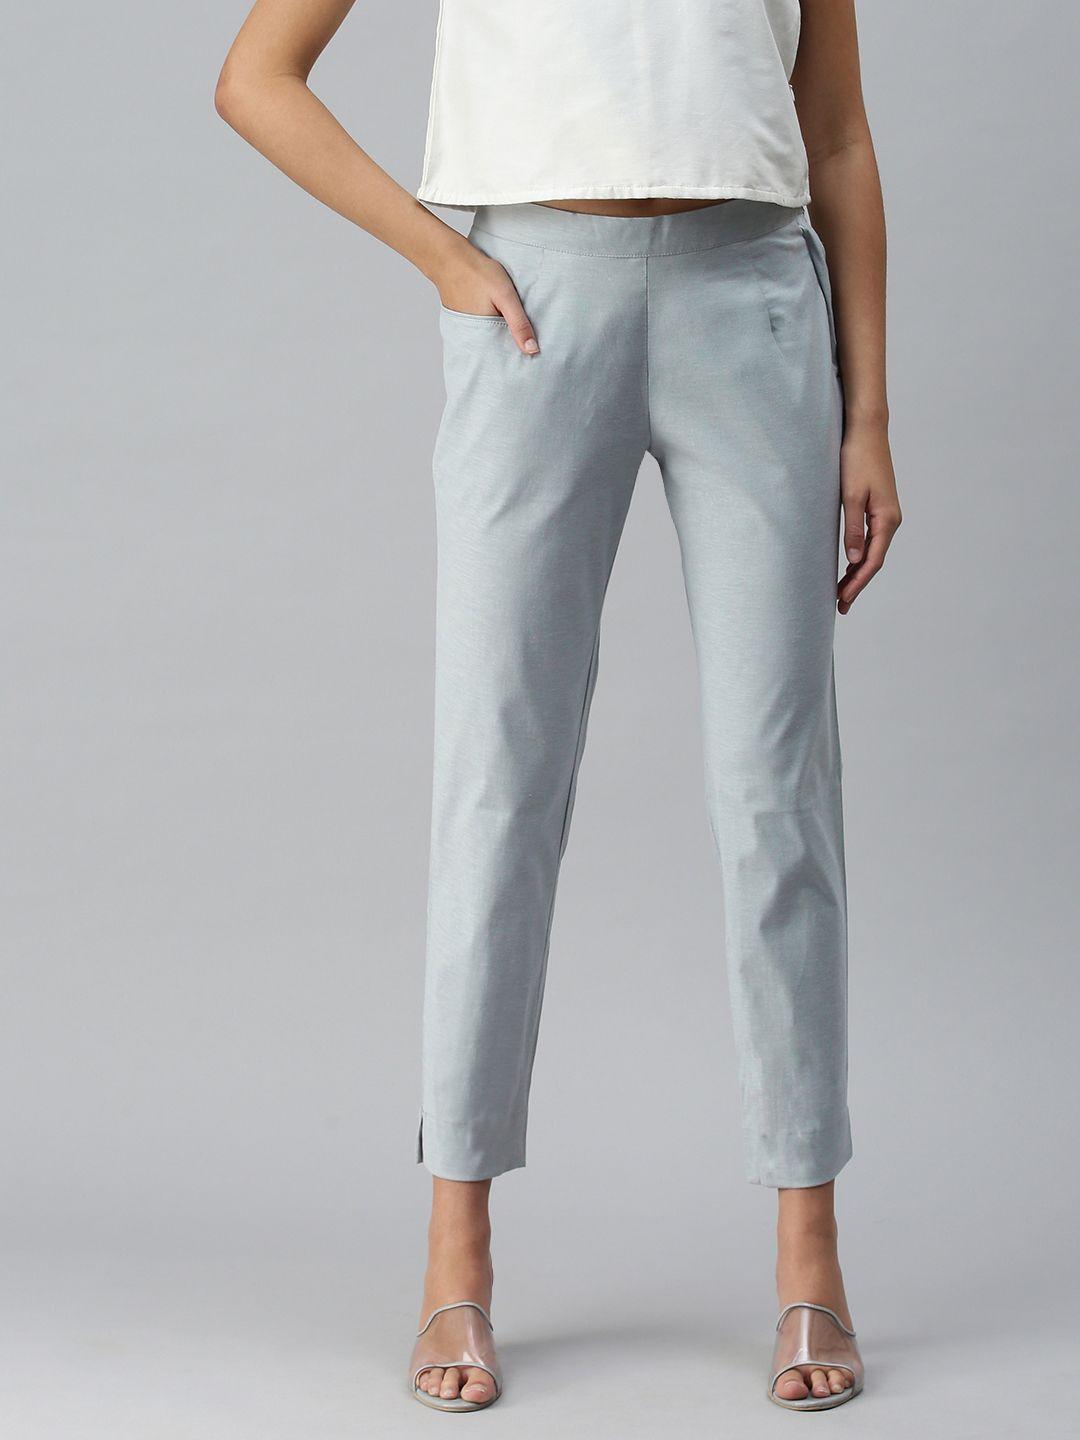 etiquette women grey smart trousers